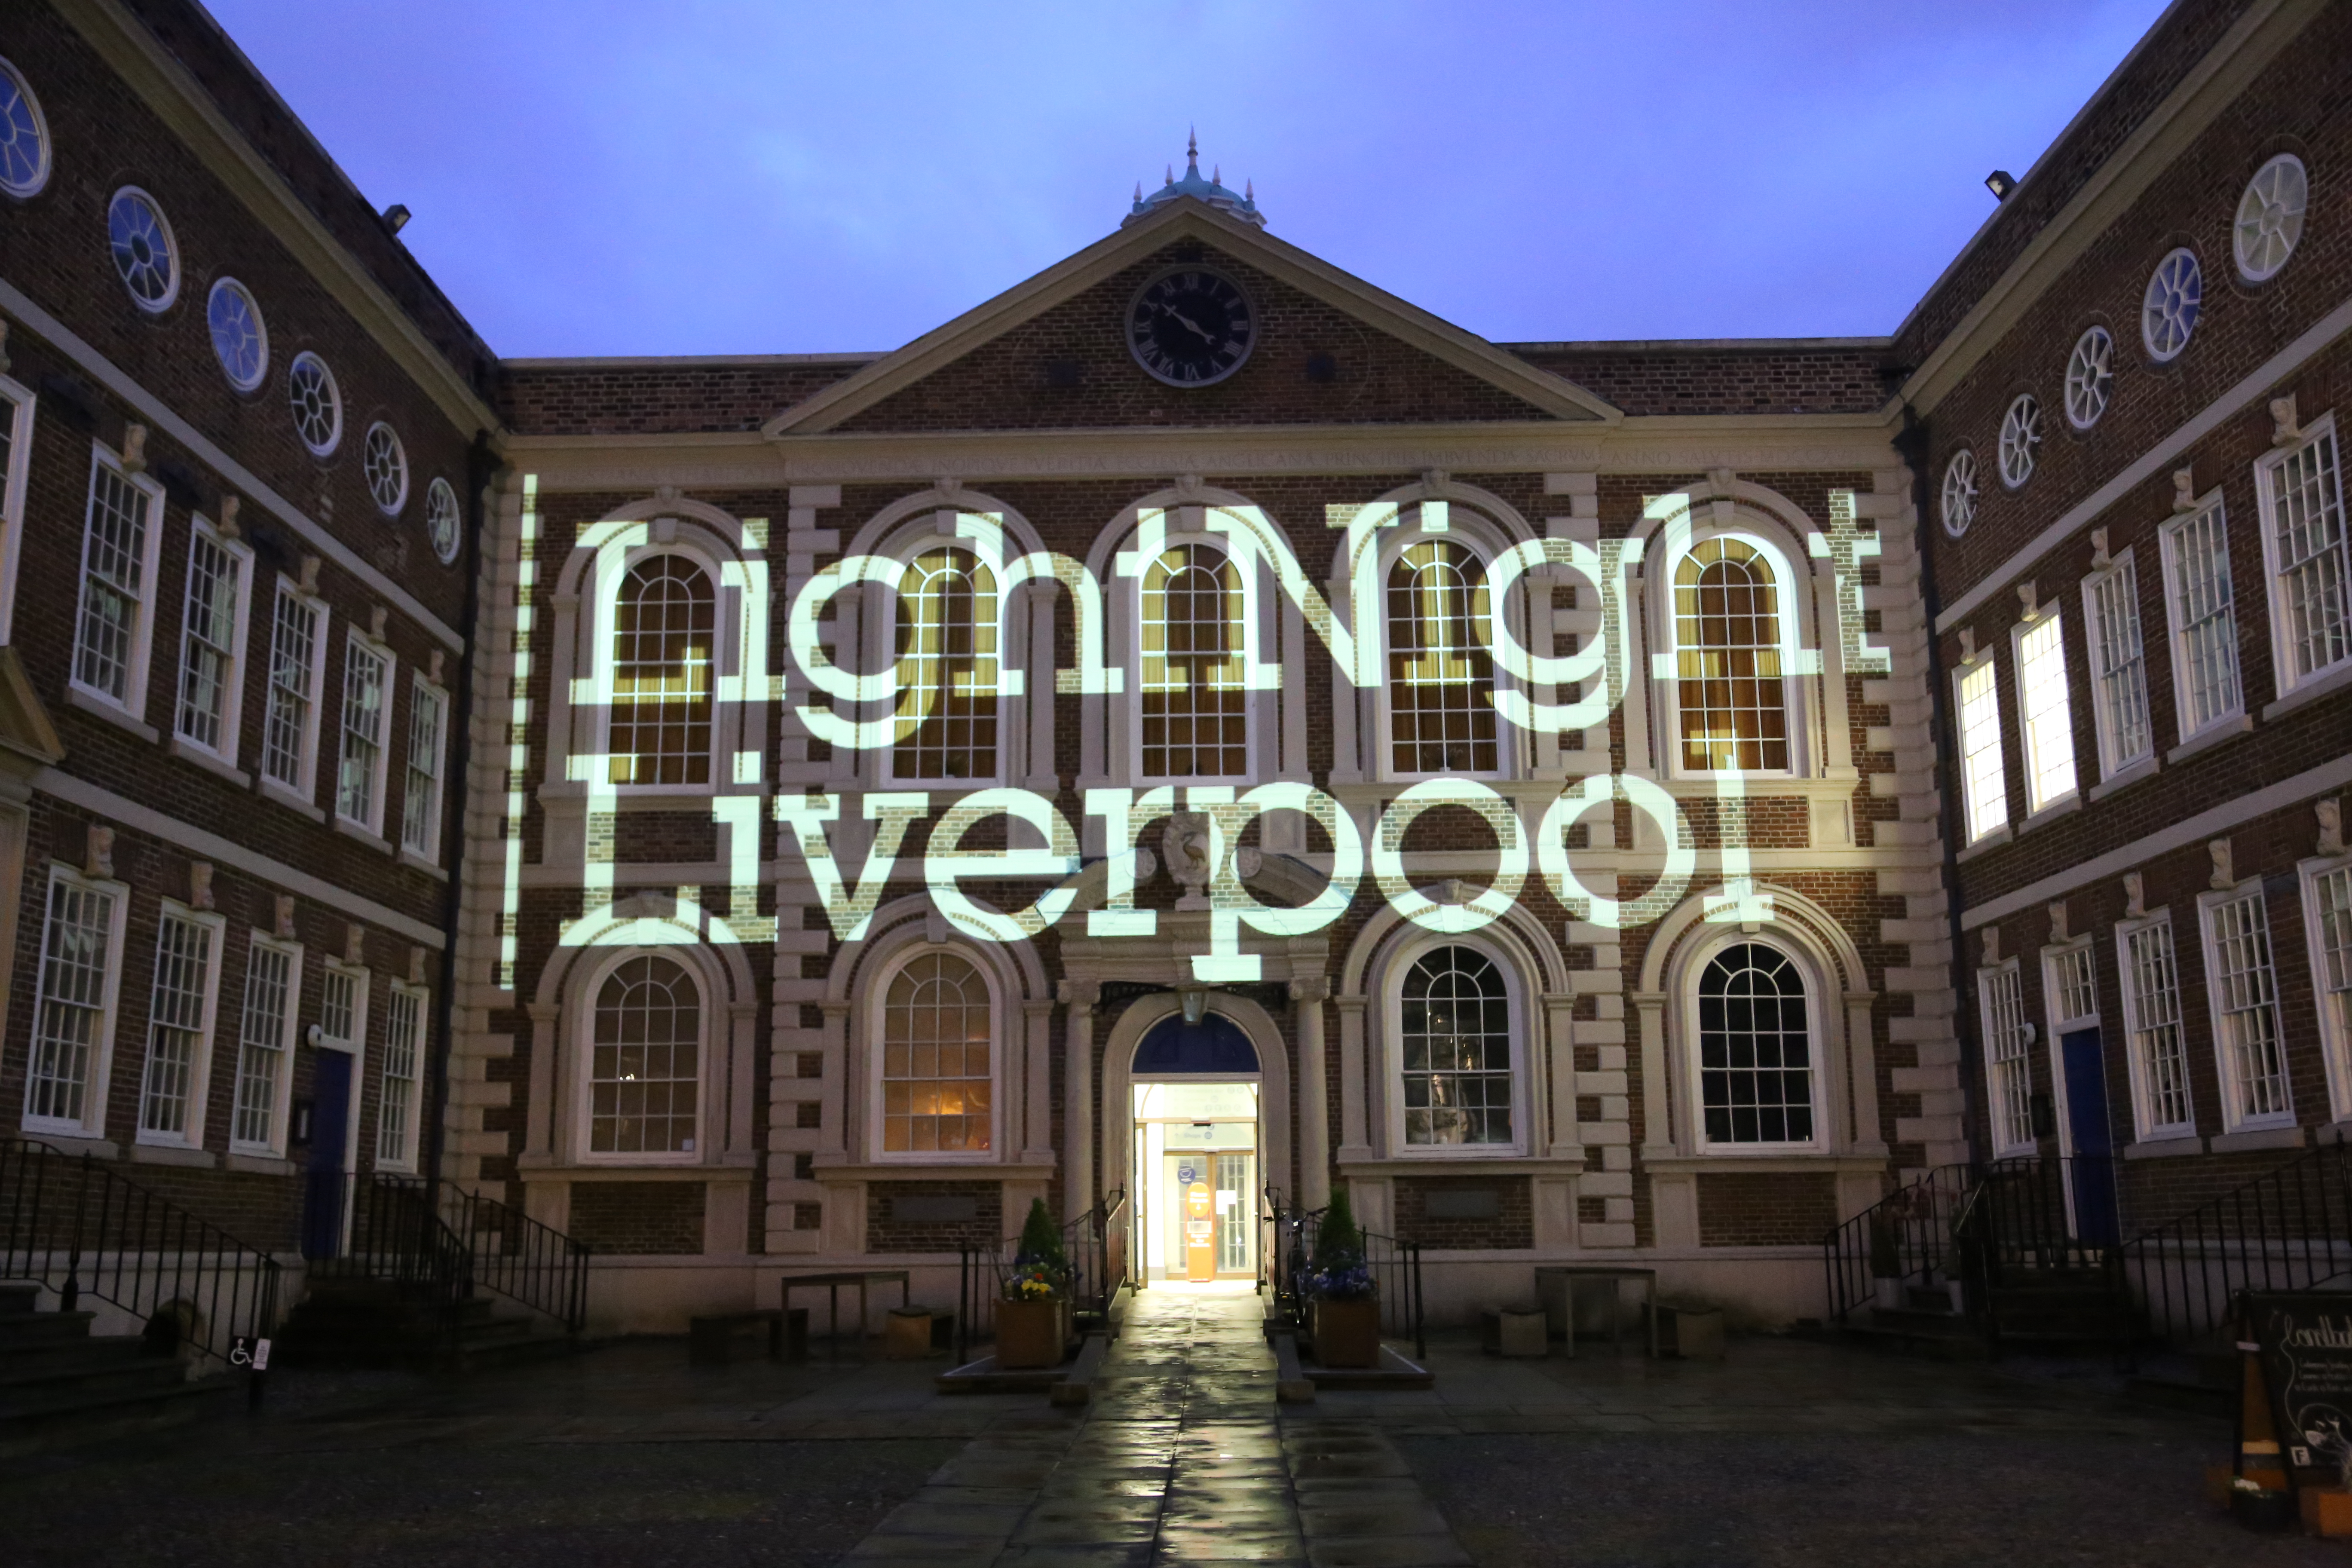 LightNight Culture Liverpool